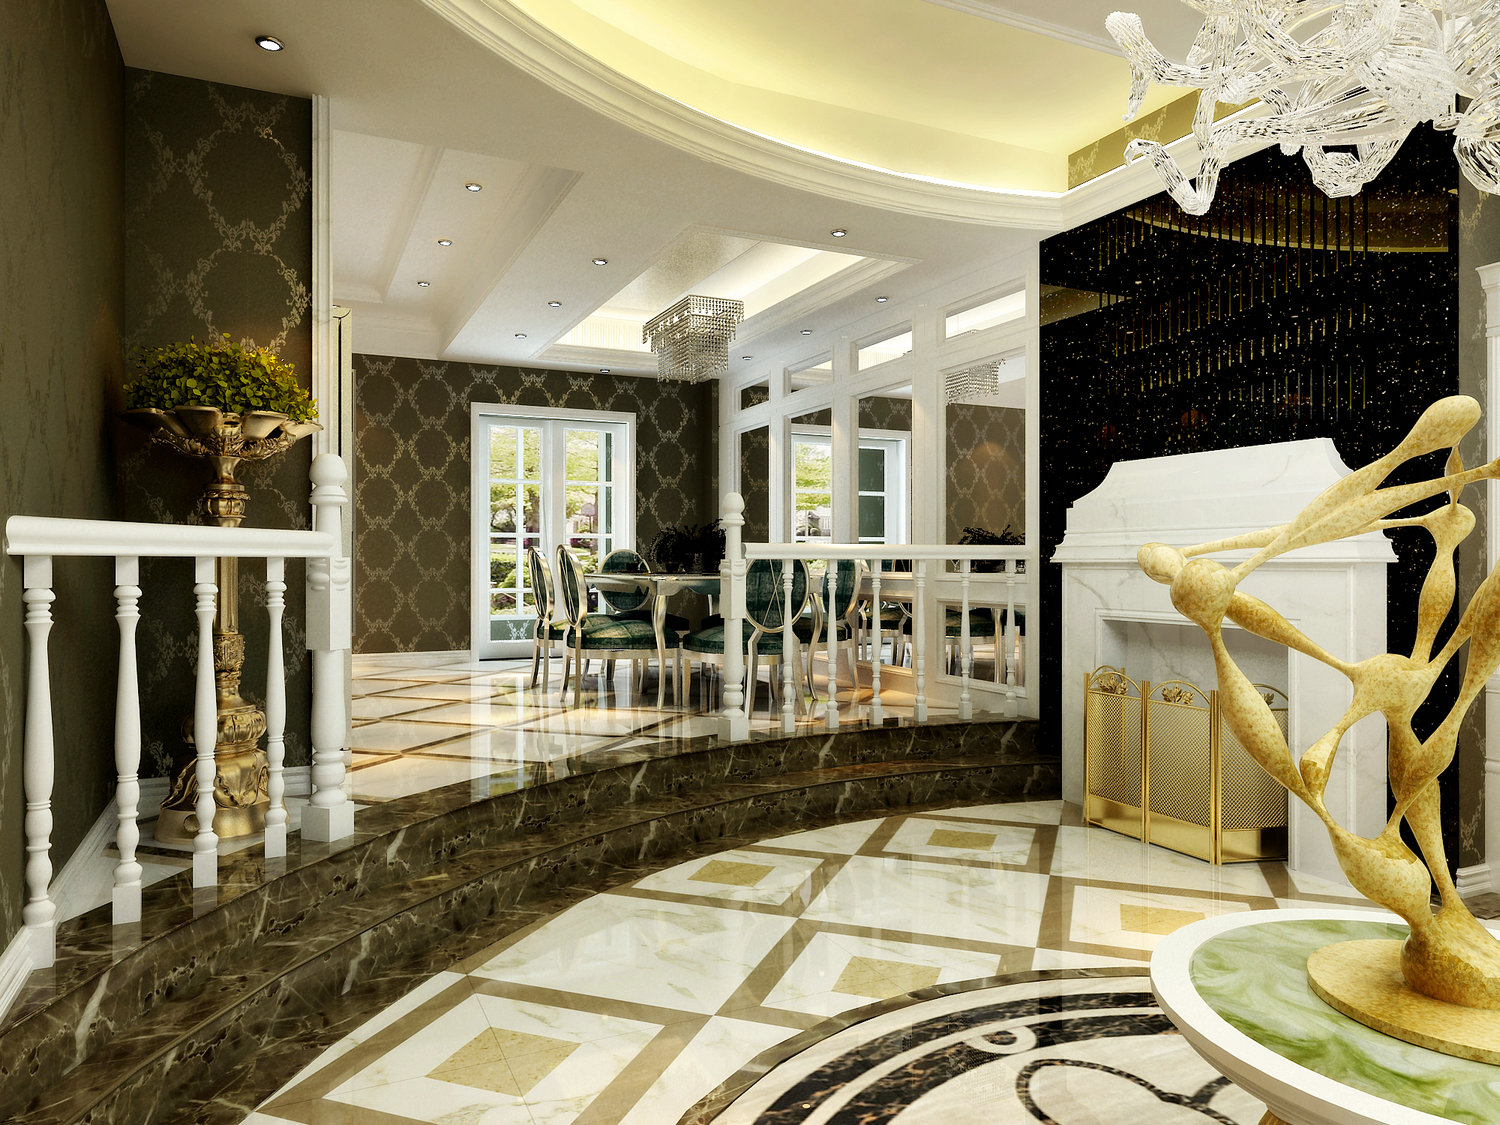 三居 餐厅图片来自实创装饰晶晶在230平别墅豪华新古典风格设计的分享